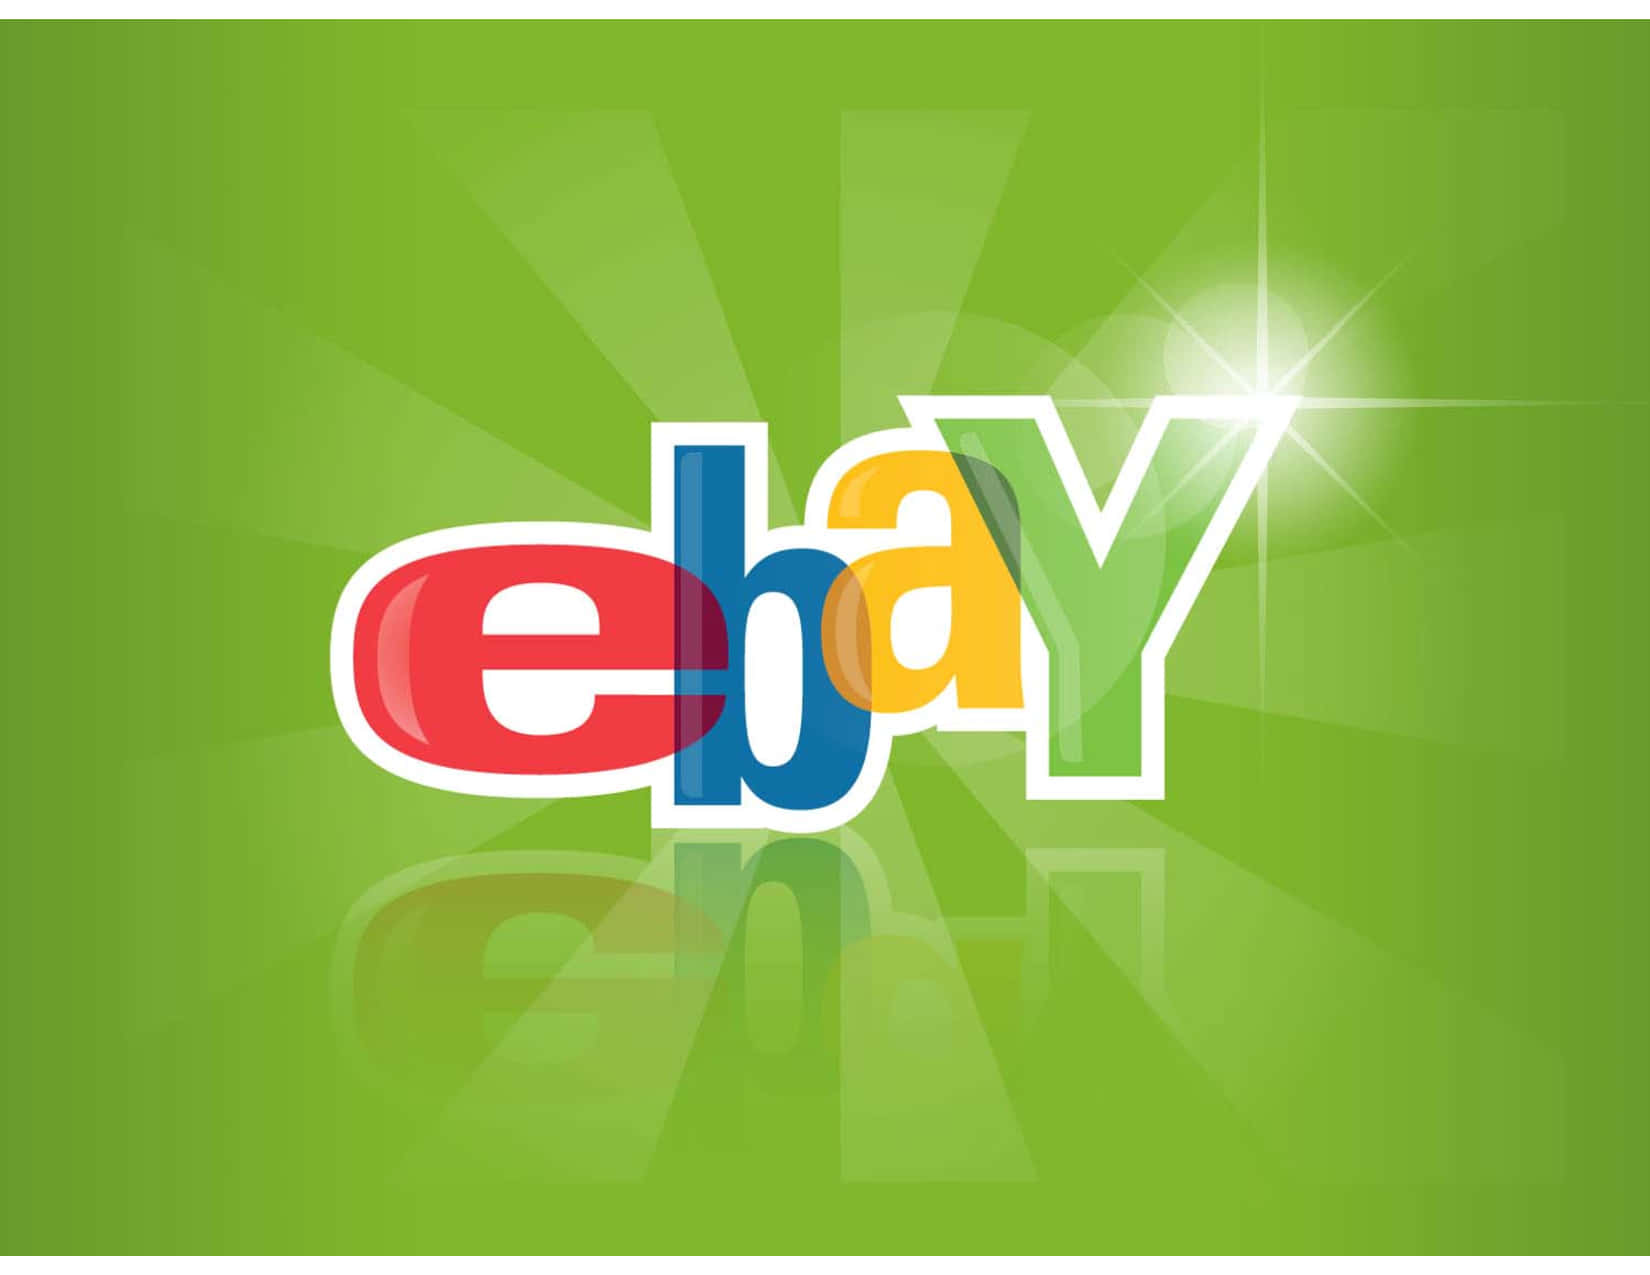 Logode Ebay Uk En Fondo Verde. Fondo de pantalla